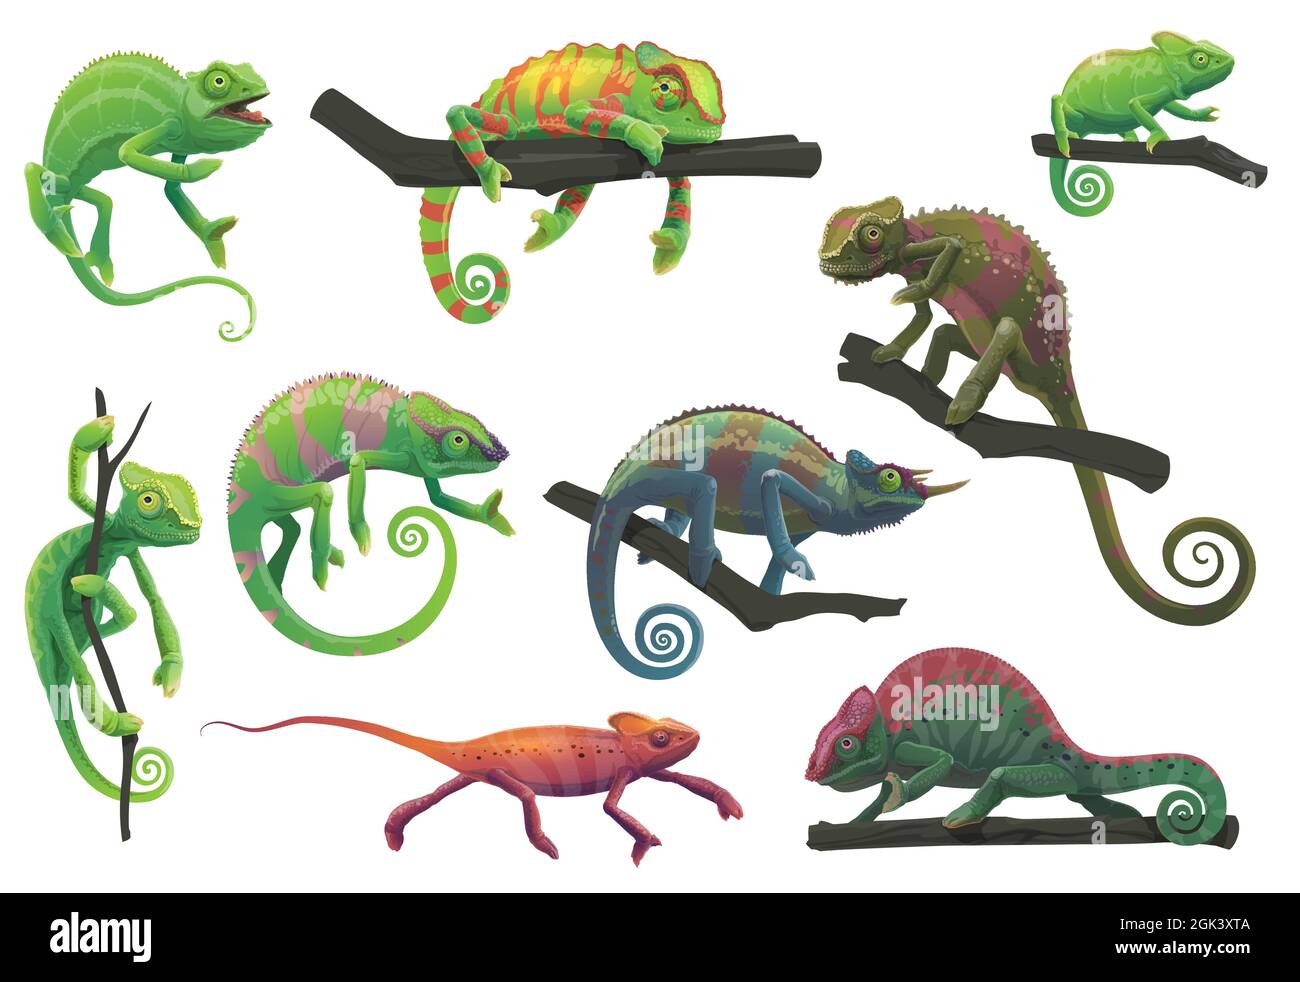 Chamäleon Eidechsen mit Baumzweigen Vektor mit Cartoon Reptilien Tiere von Panther, jackson, verschleiert, grün und rot Chamäleon in verschiedenen Posen gesetzt. Stock Vektor